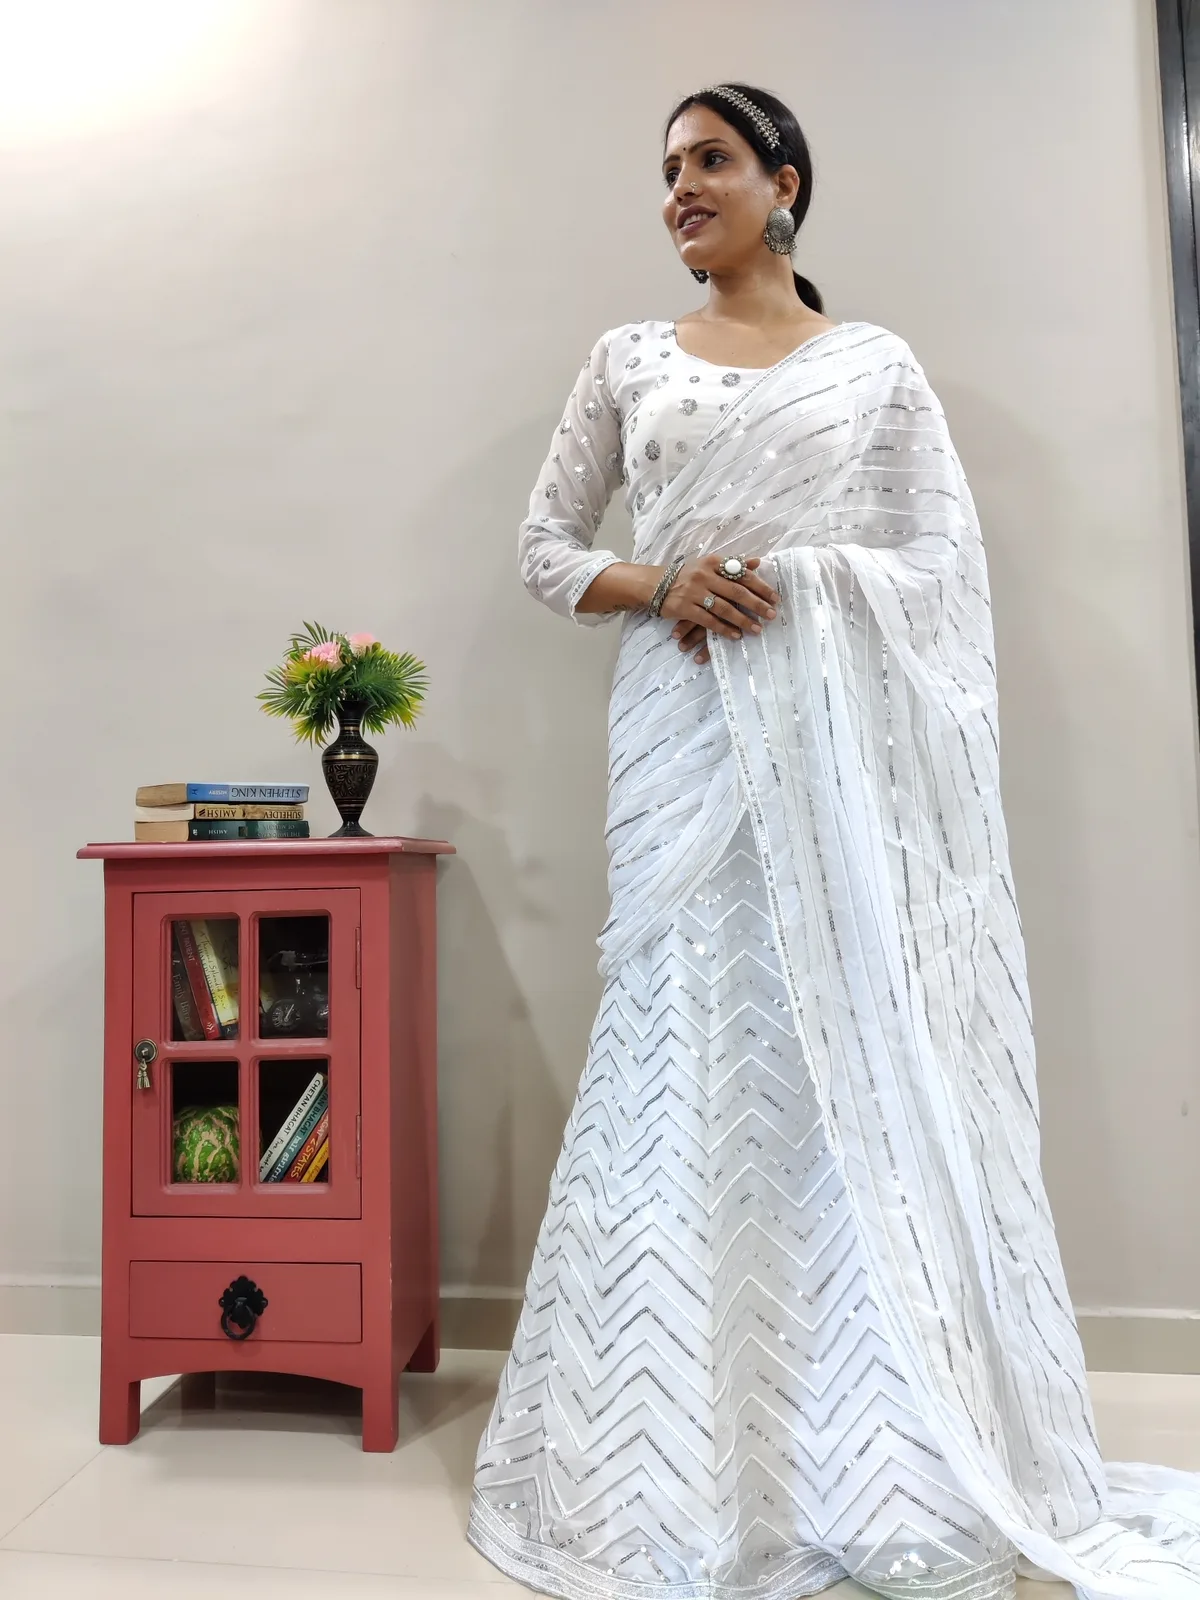 lehenga #saree #fashion #indianwedding #lehengacholi #indianwear  #ethnicwear #wedding #indianfashion #onlineshopping #kurti #indianbride...  | Instagram